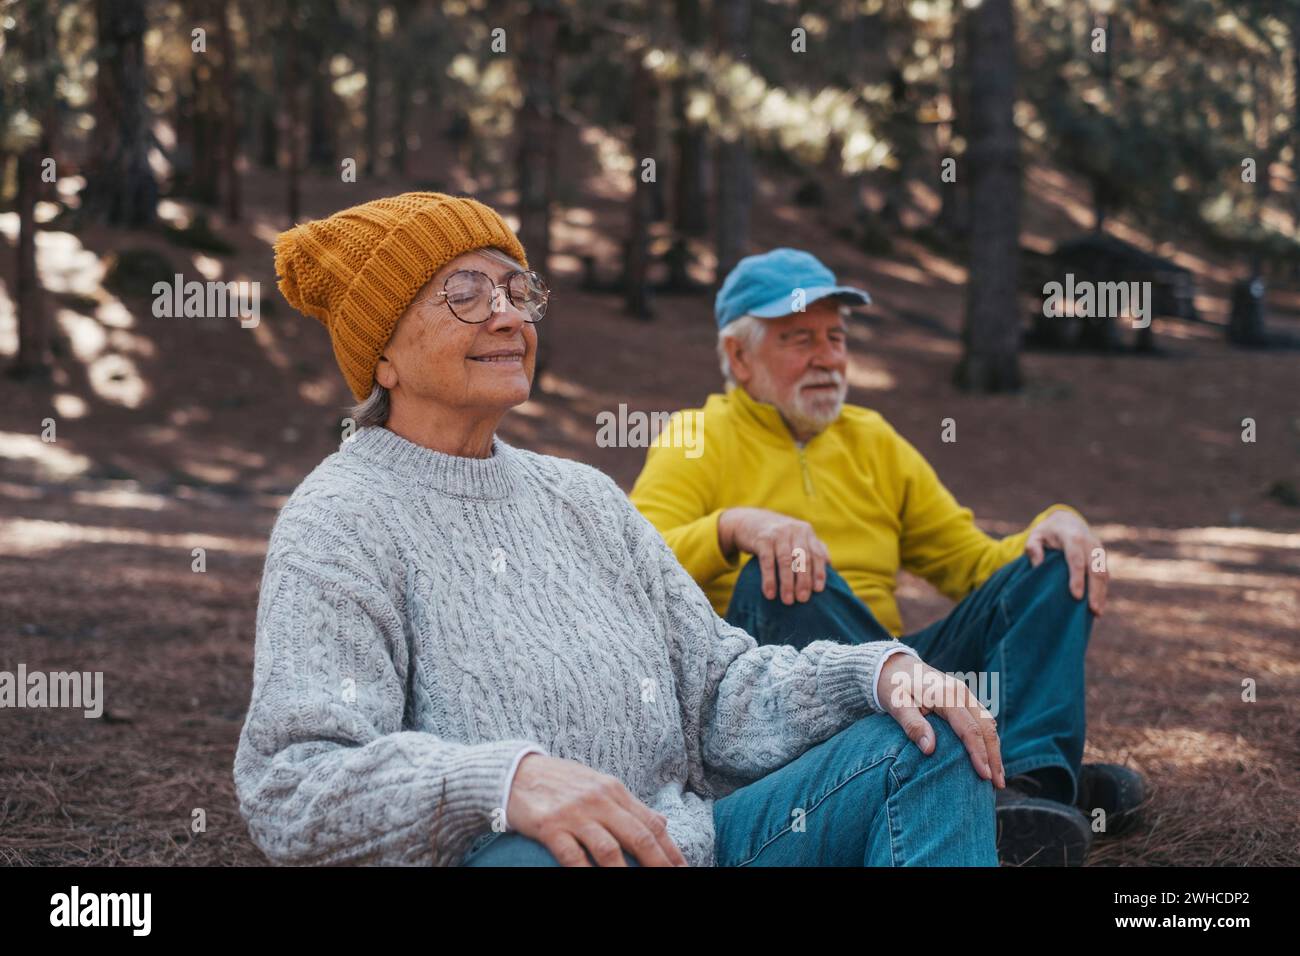 Porträt, Nahaufnahme von zwei älteren Menschen mittleren Alters, die in den Bergen inmitten des Waldes im Freien meditieren und entspannen. Zwei Erwachsene Personen, die Spaß haben, sich zu entspannen. Stockfoto